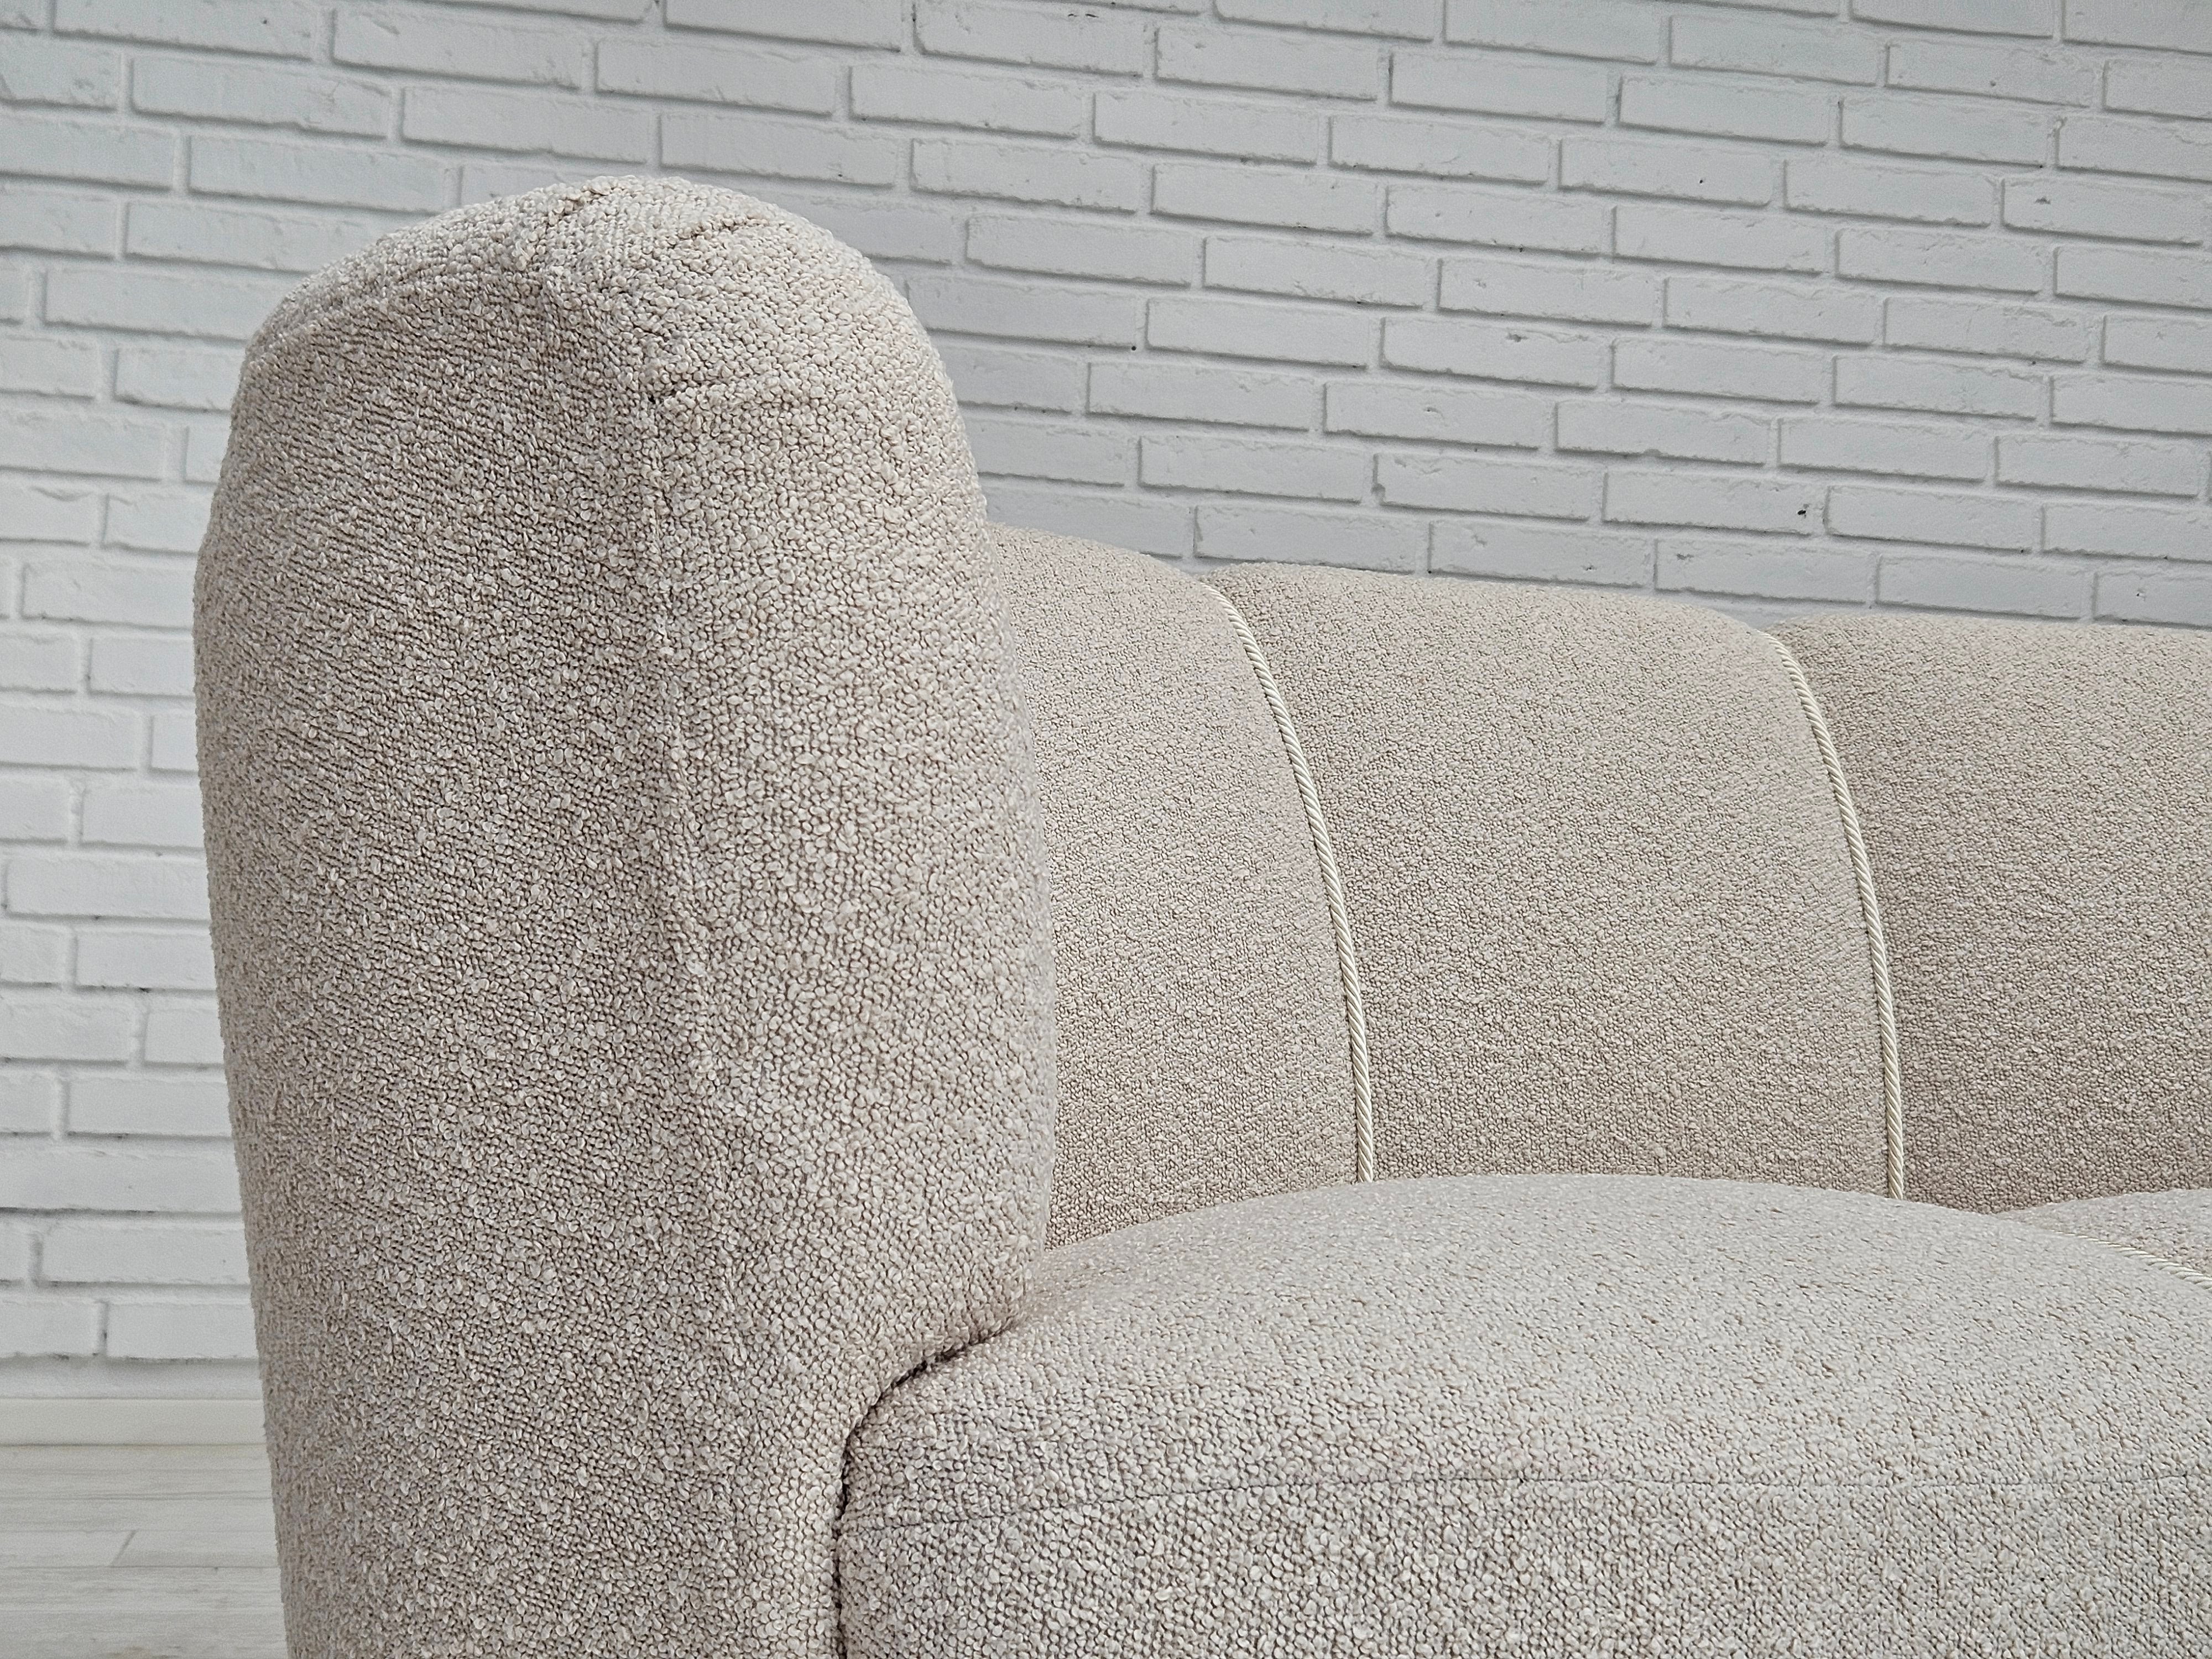 1960erne, Dansk design, renoveret 3 pers. "Banana" sofa, beige/creamy møbelstof.